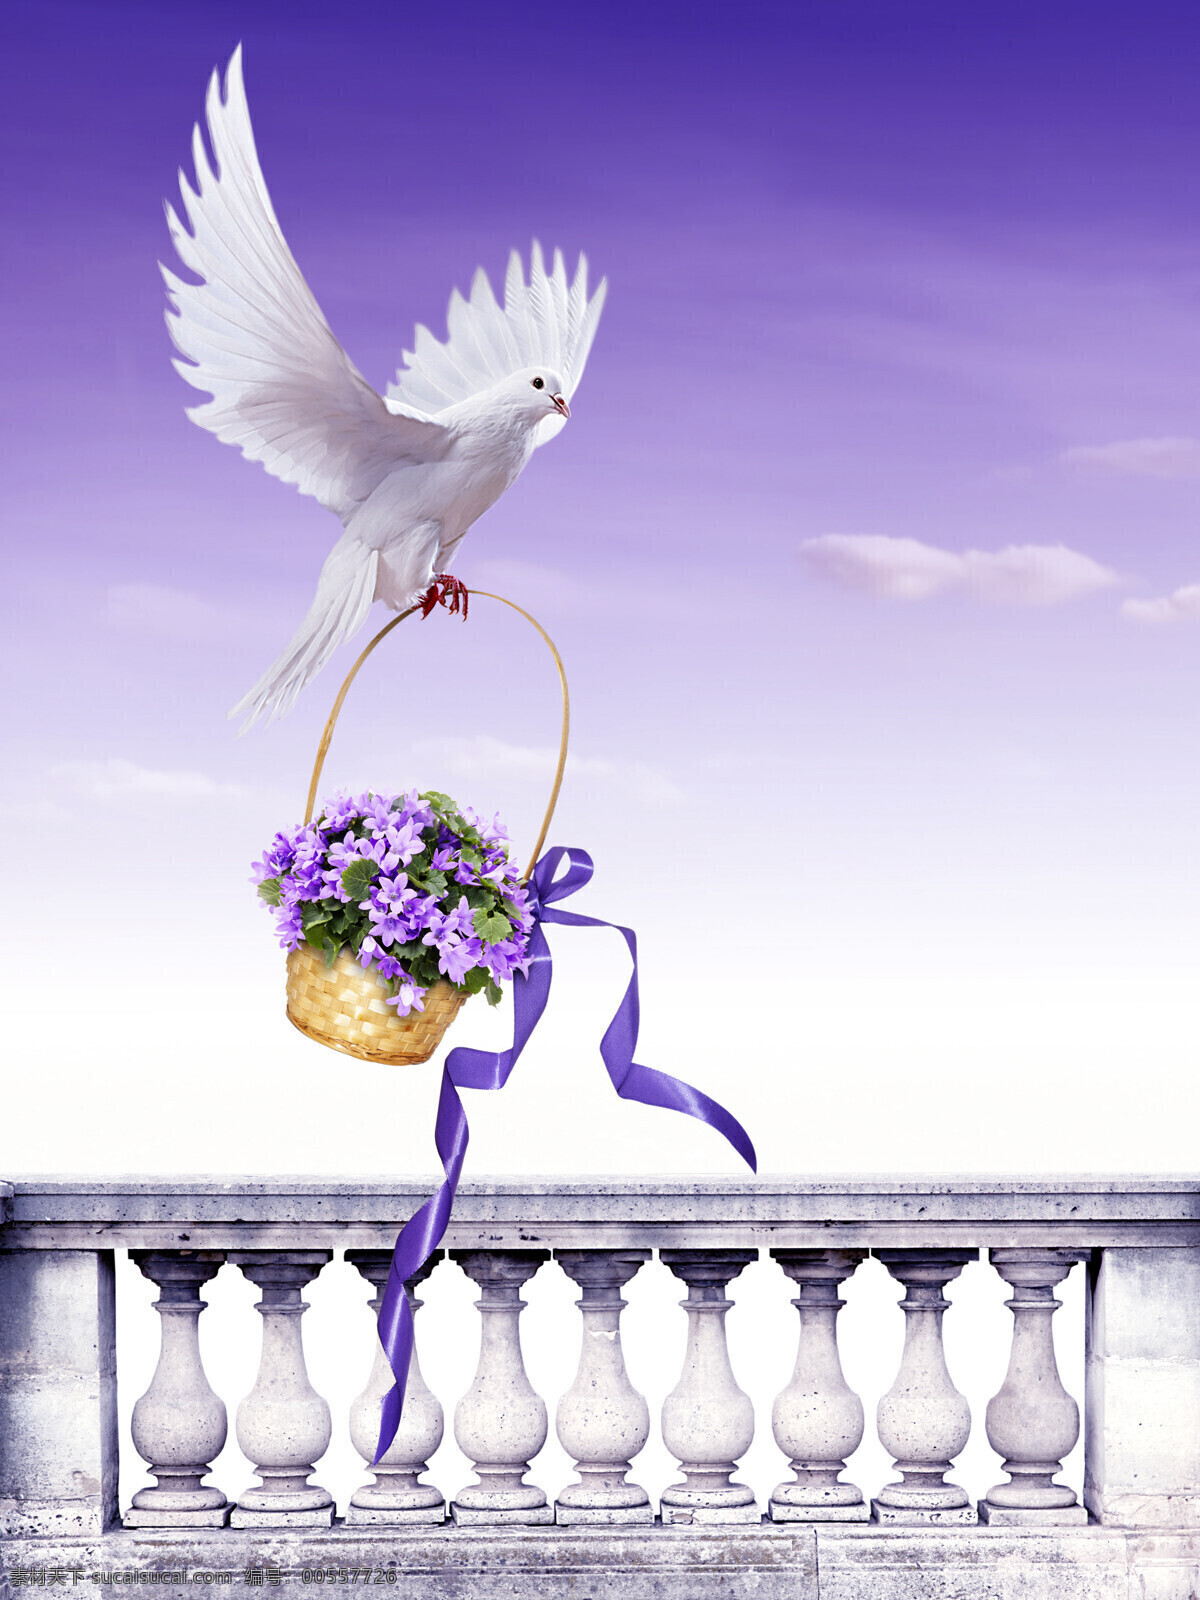 叼 花篮 白鸽 紫色 紫色花朵 丝带 篮子 鲜花 白色 鸽子 阳台 栏杆 风铃草 野风信子 图片大全 高清图片 鸟类 生物世界